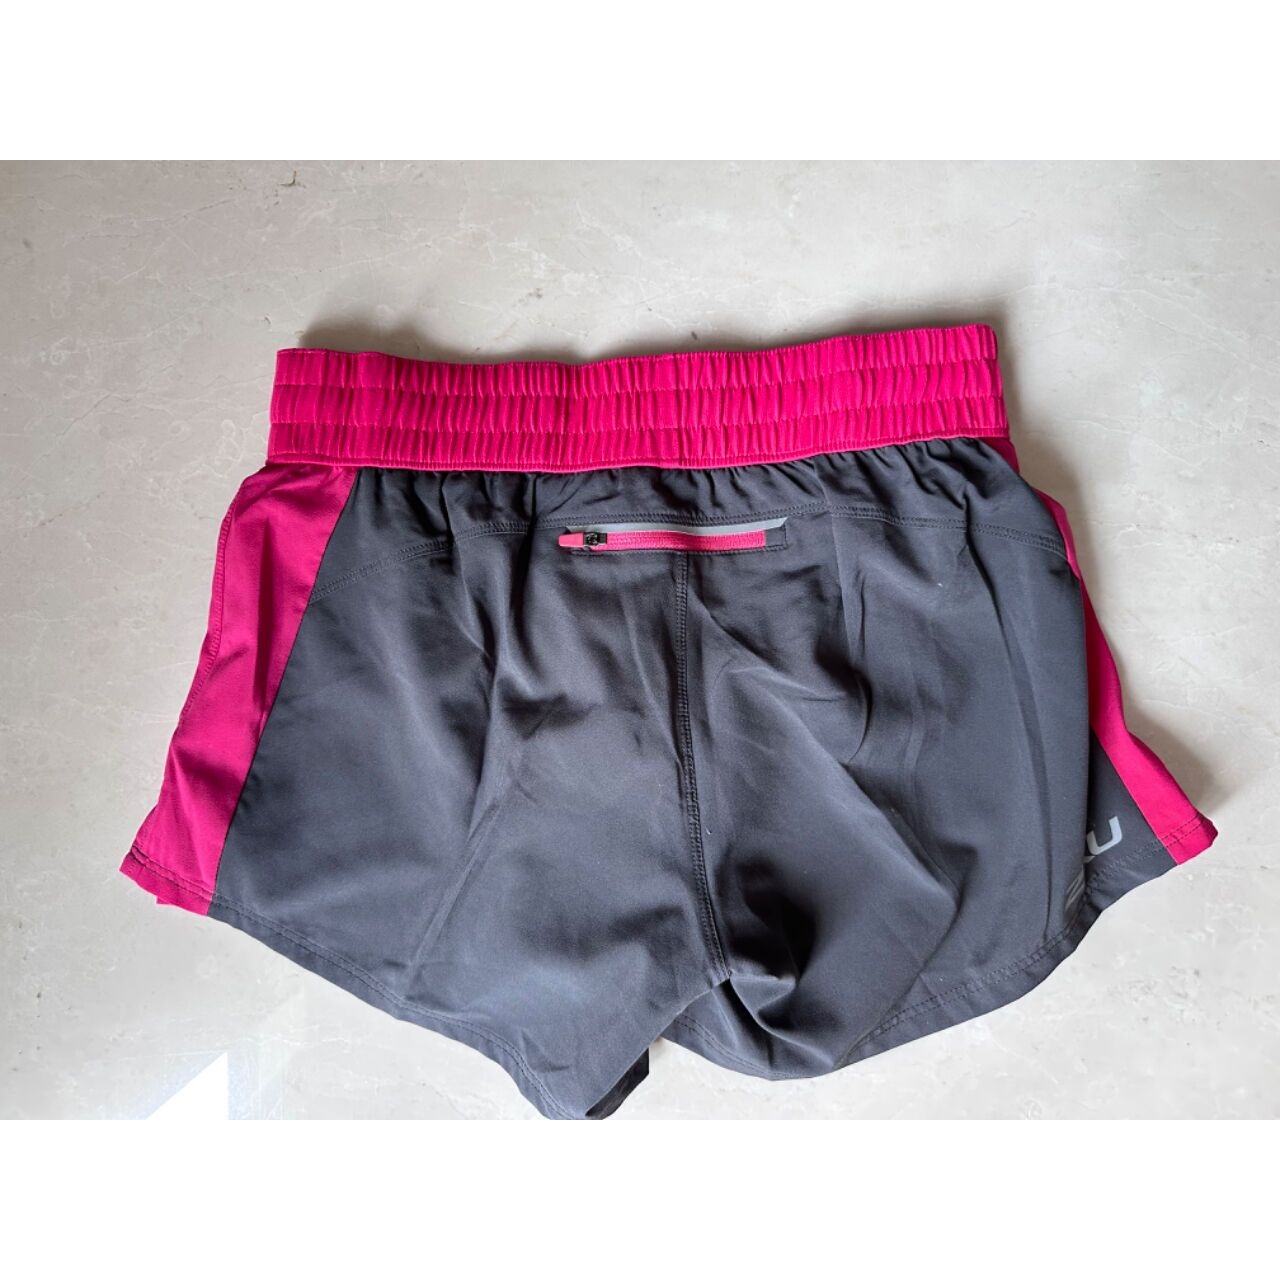 2XU Grey & Pink Shorts